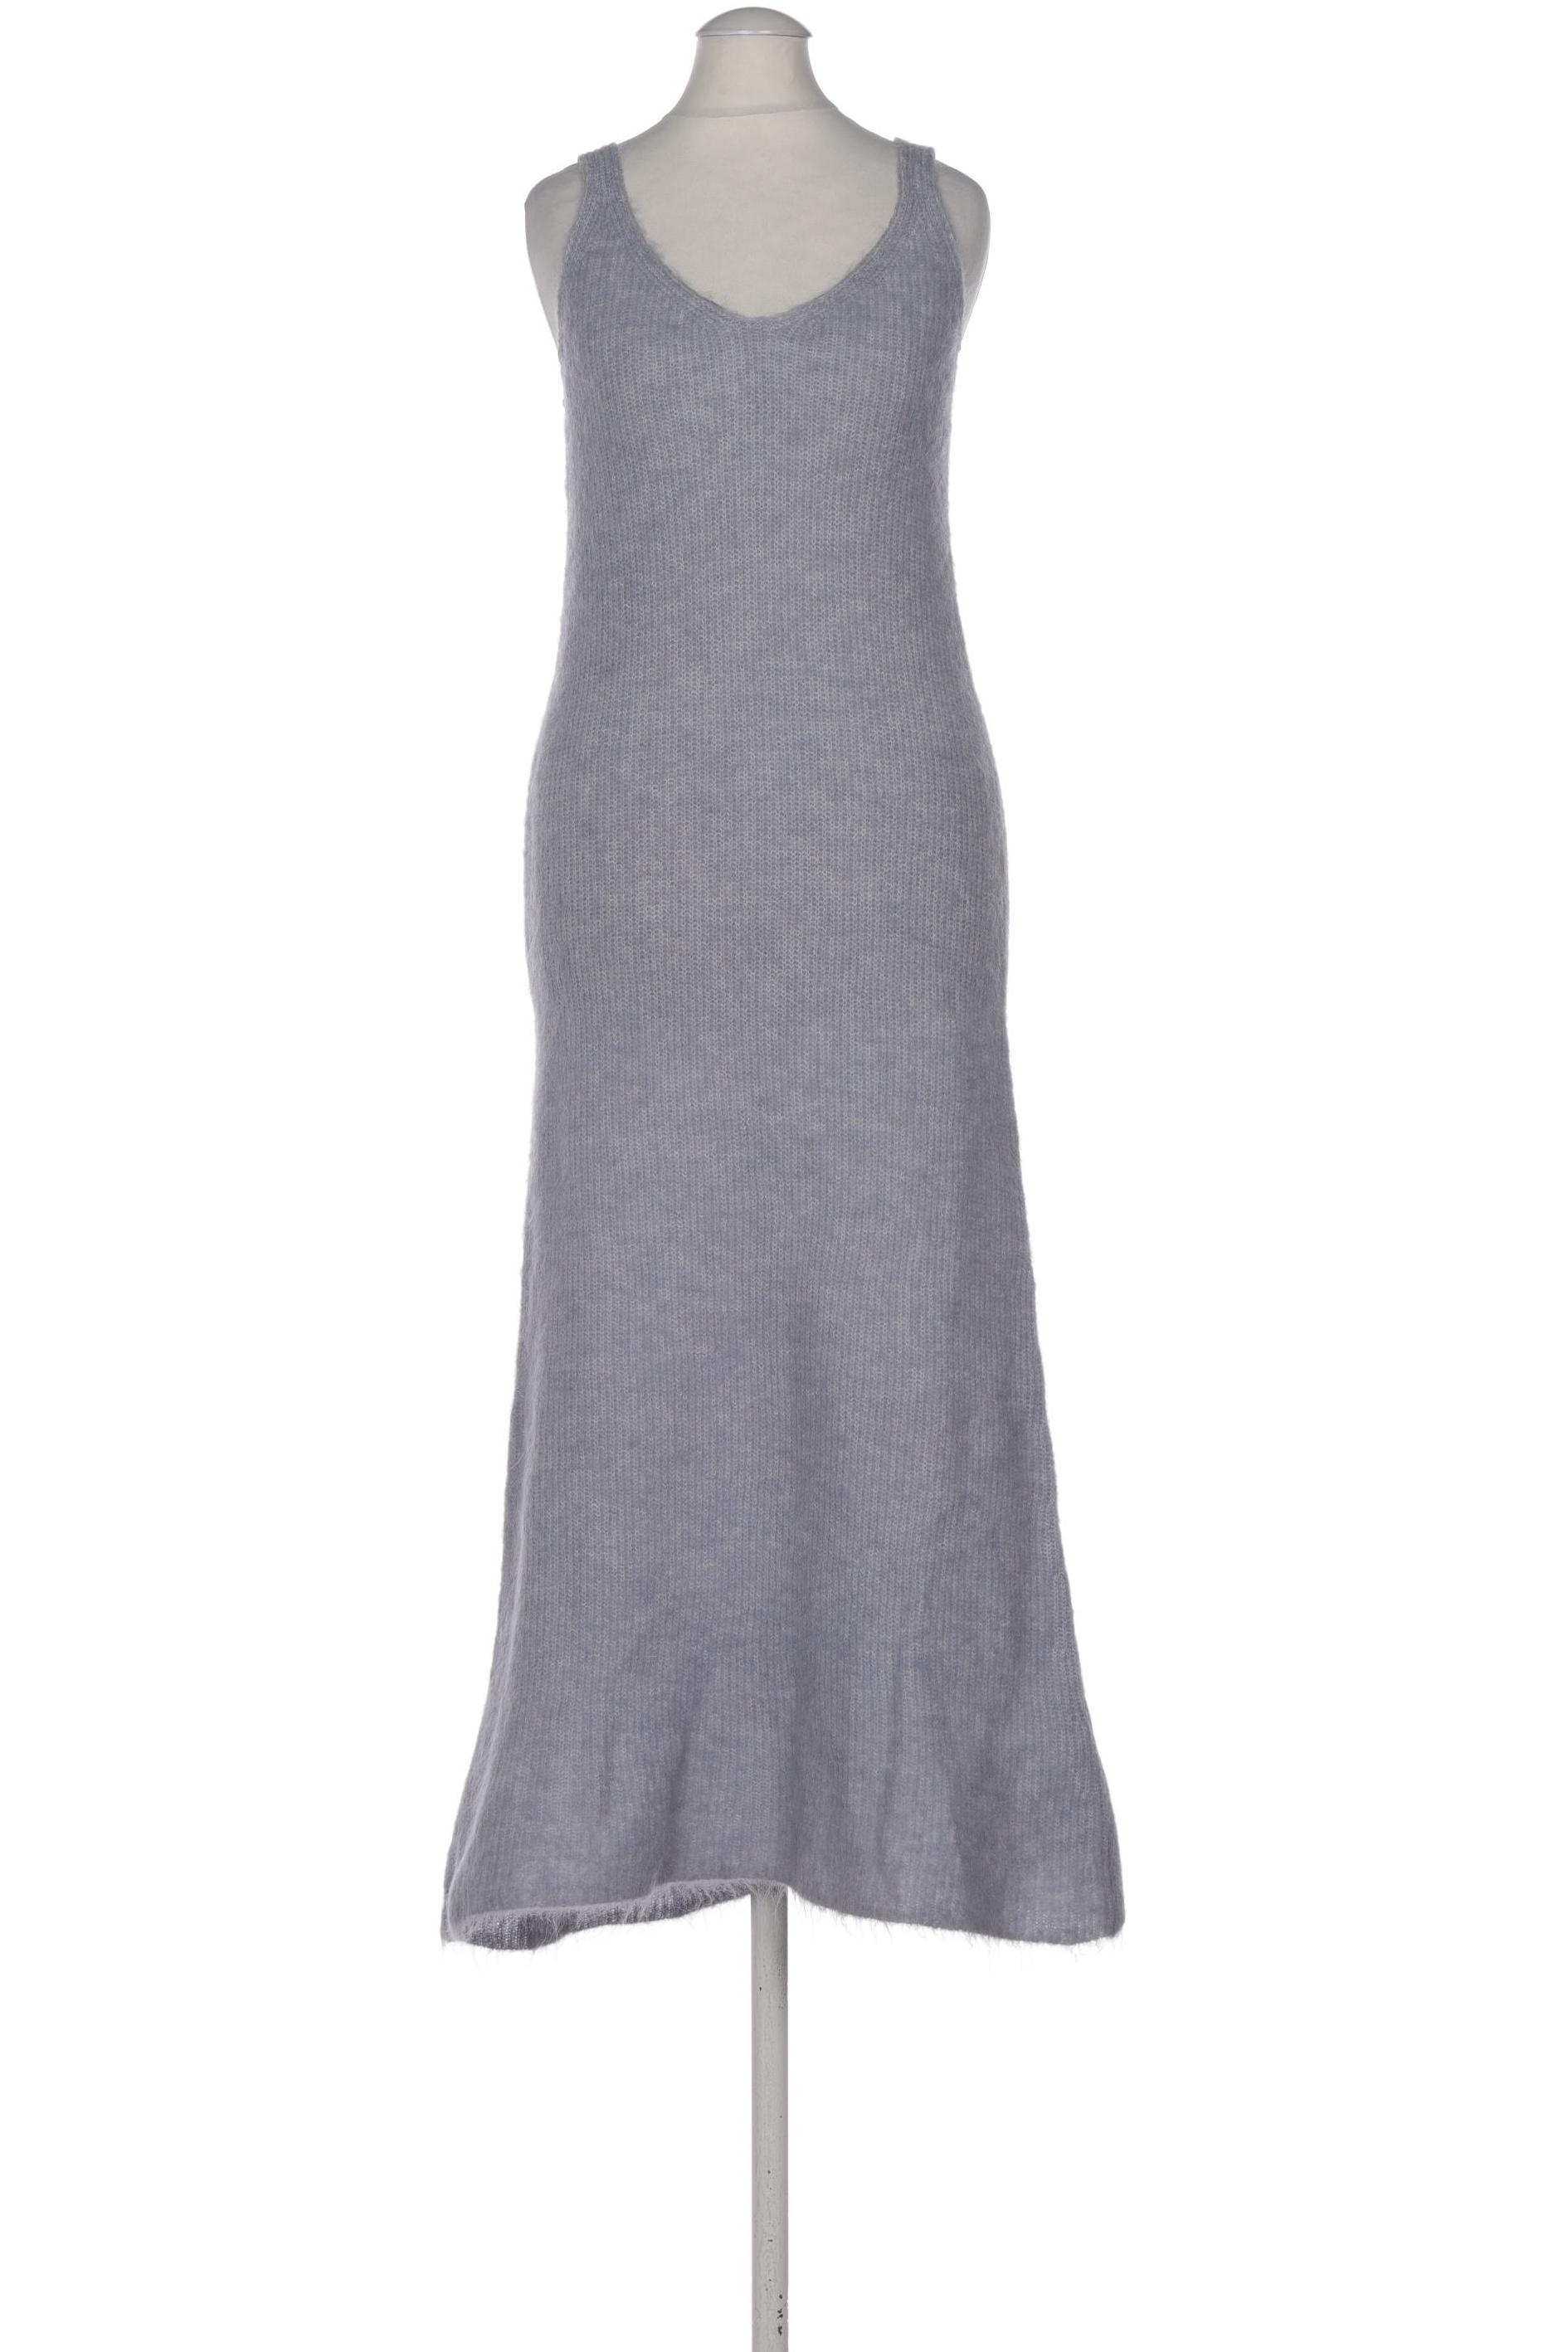 Zara Damen Kleid, hellblau, Gr. 38 von ZARA